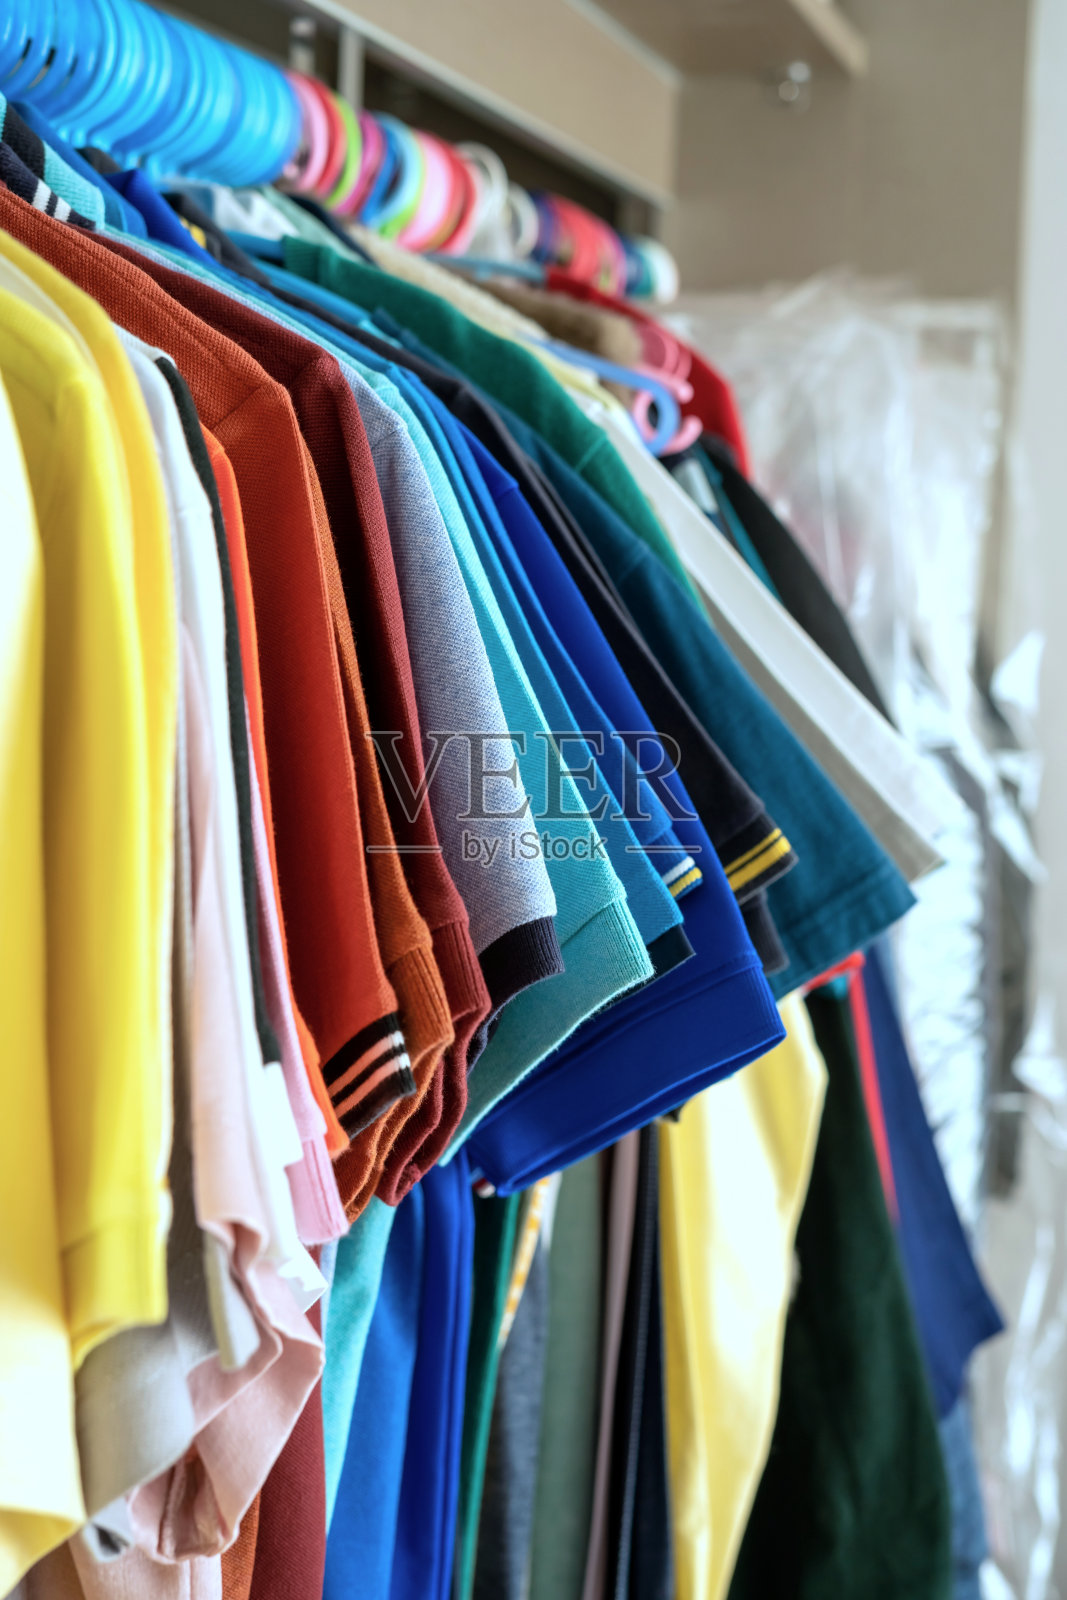 各种色彩鲜艳的衣服整齐地挂在衣柜上照片摄影图片